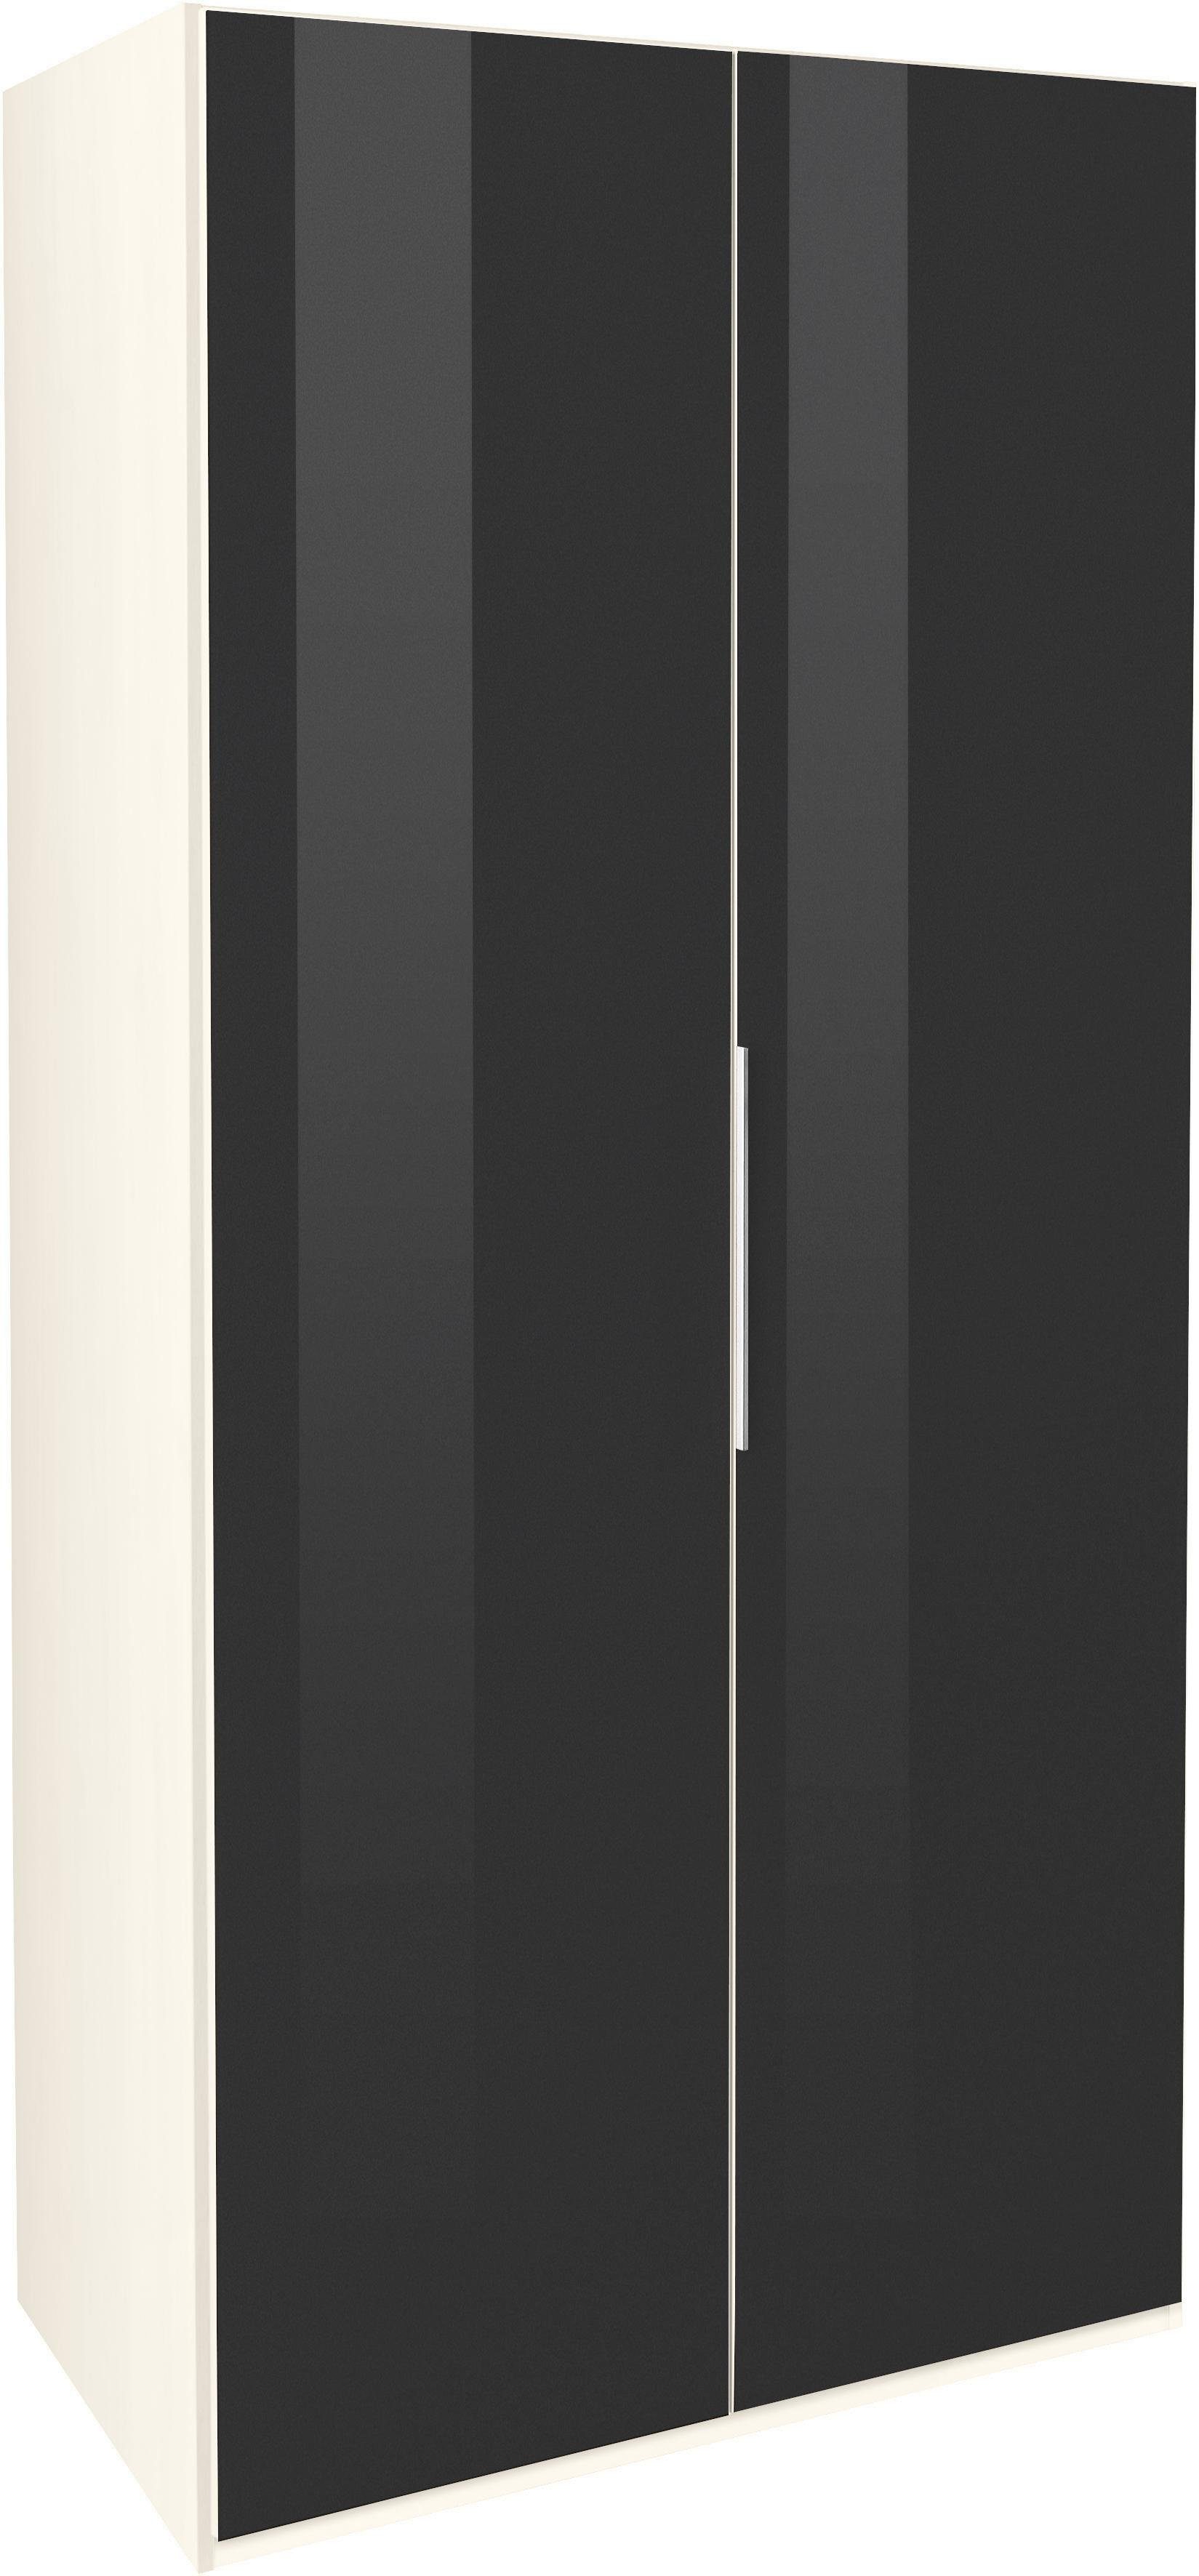 Türen Level Go vollflächig weiß/Grauglas mit farbigem Fresh To Kleiderschrank Glas